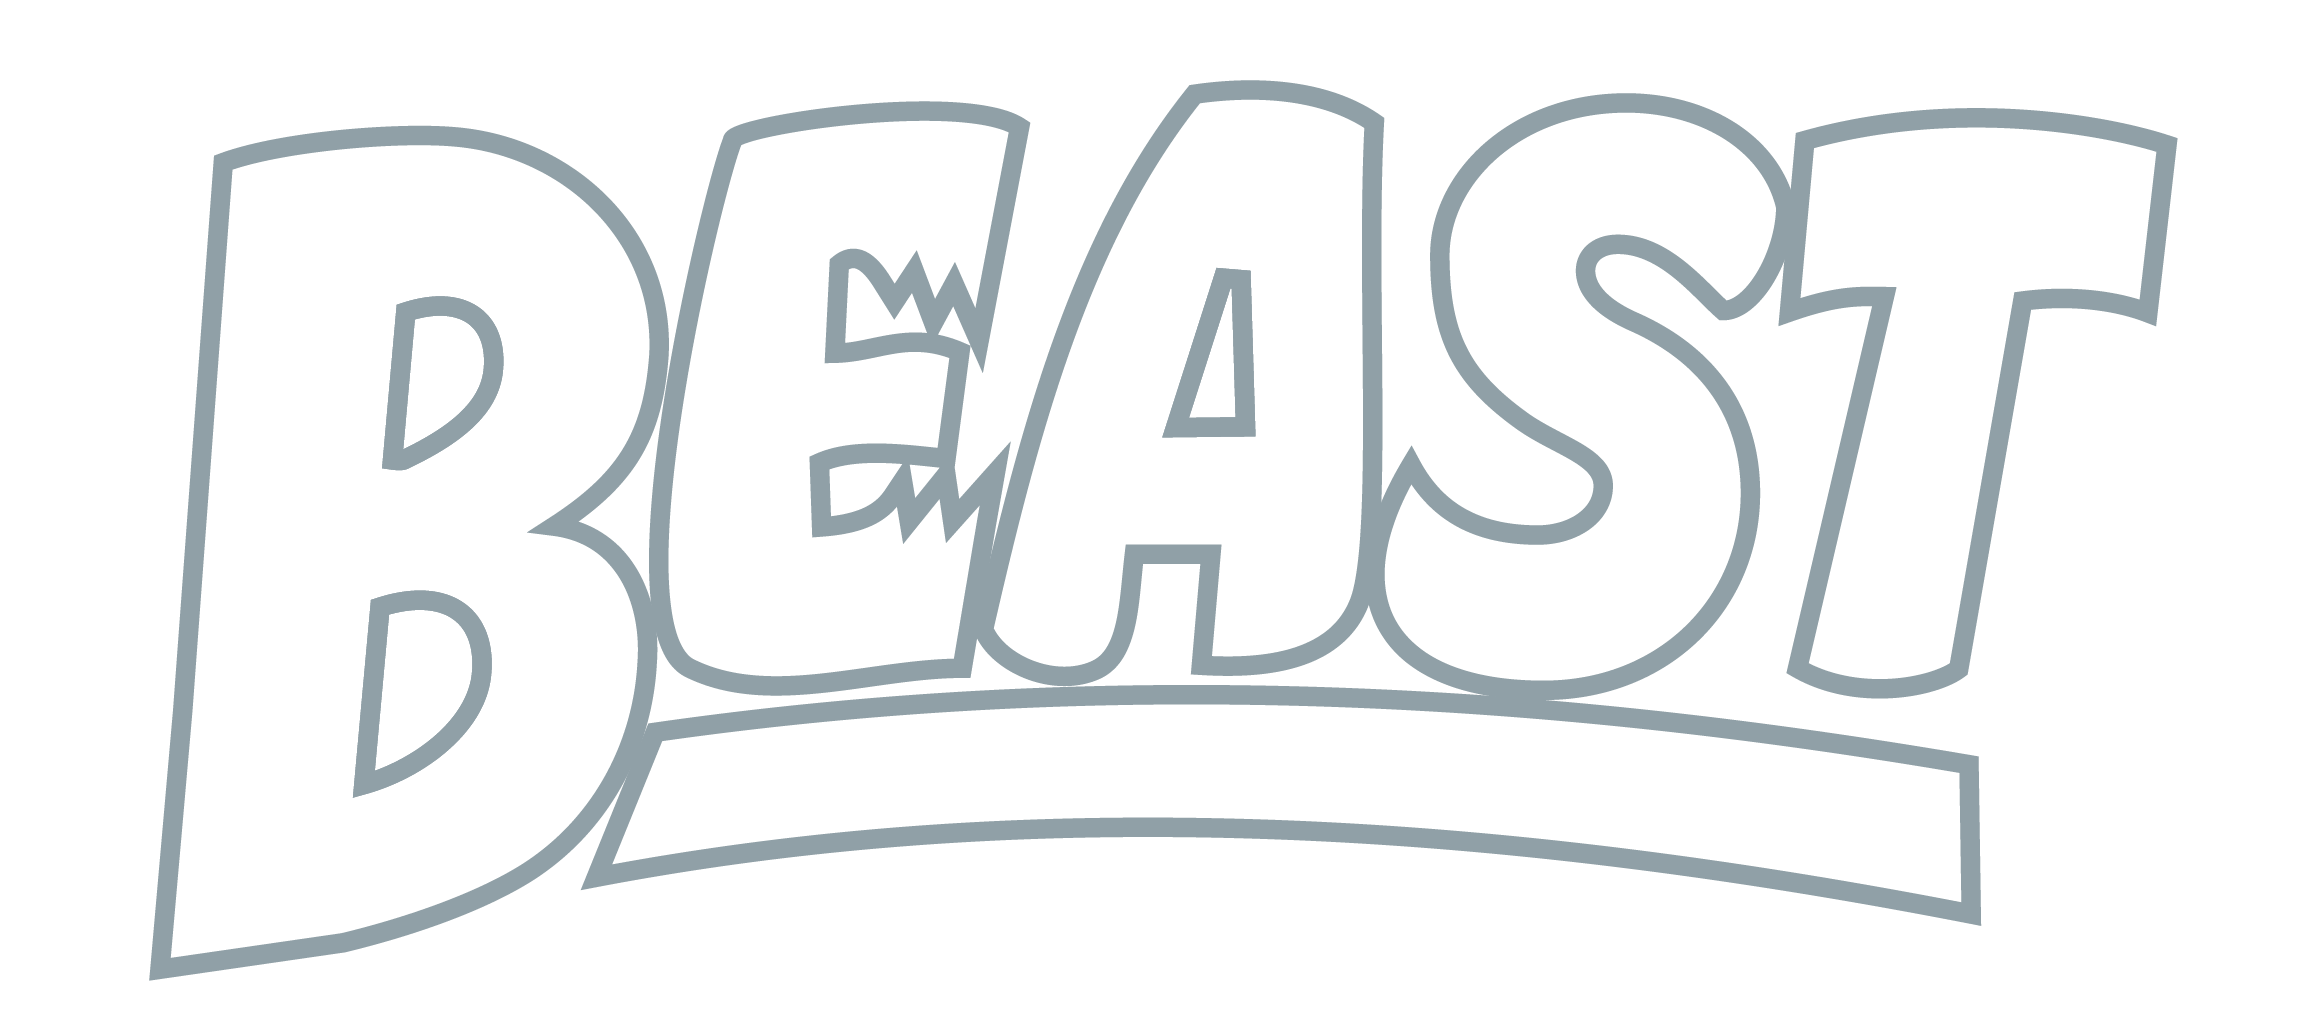 BEAST_Logo_DuskyBlue-4.png